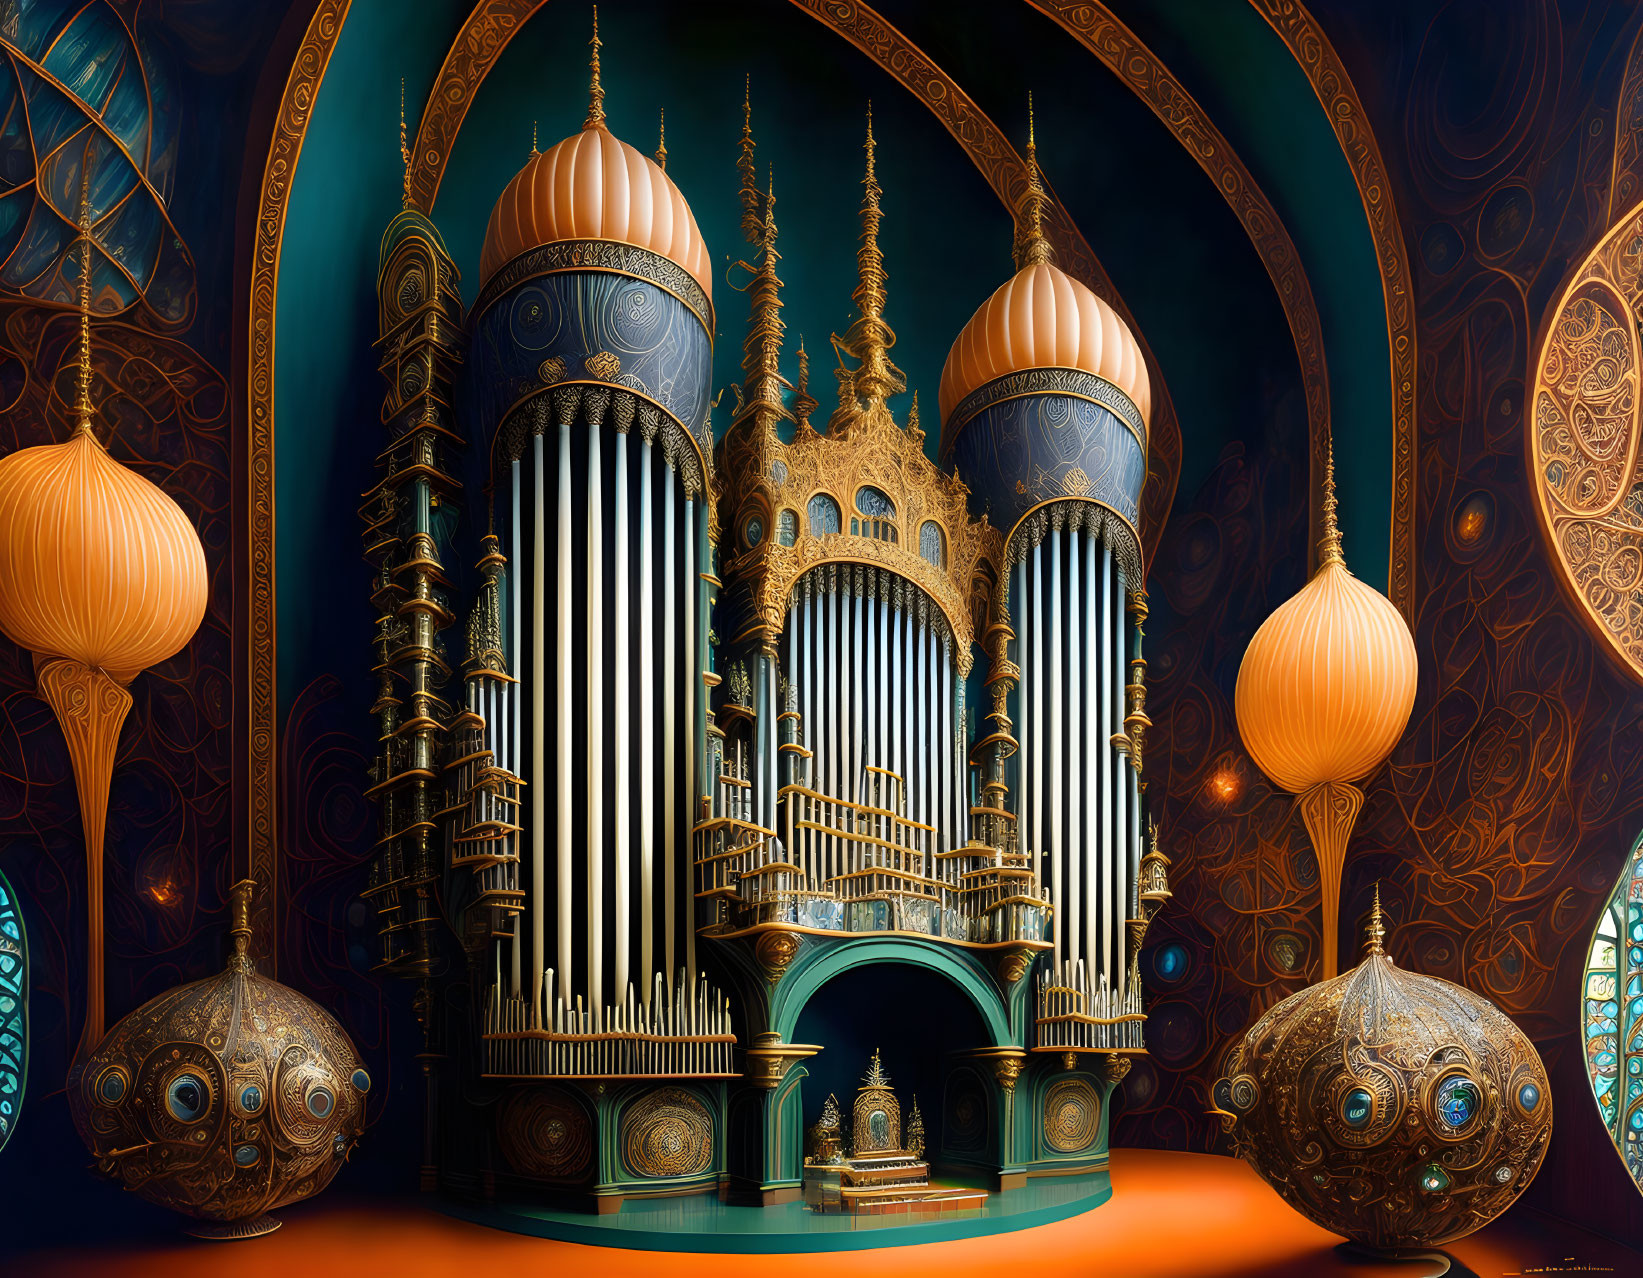 Pipe organ 